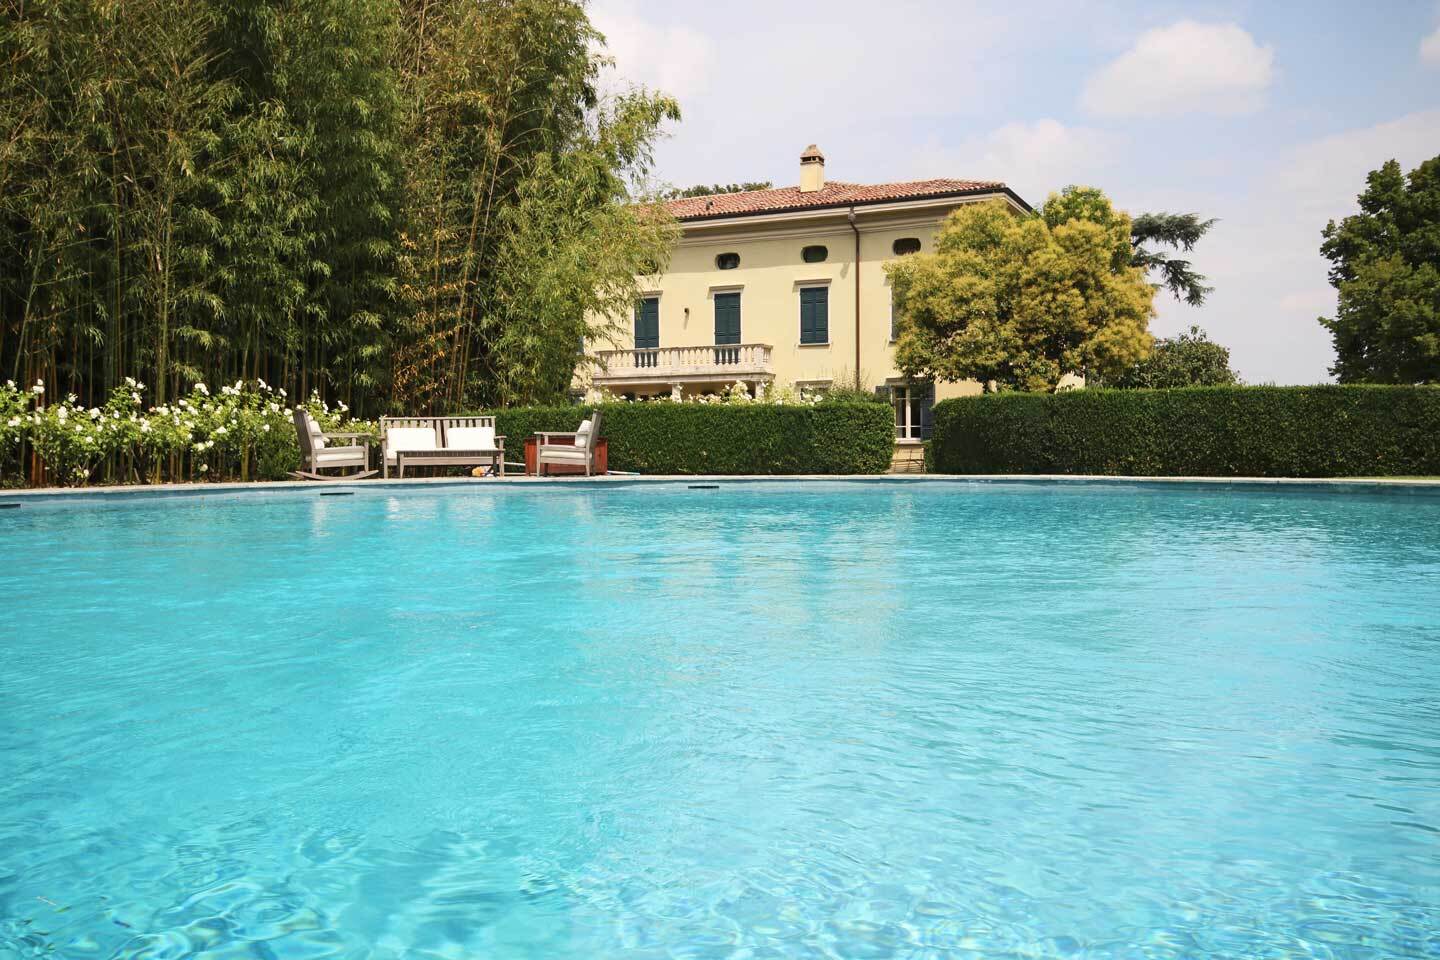 Vendita villa in zona tranquilla Collecchio Emilia-Romagna